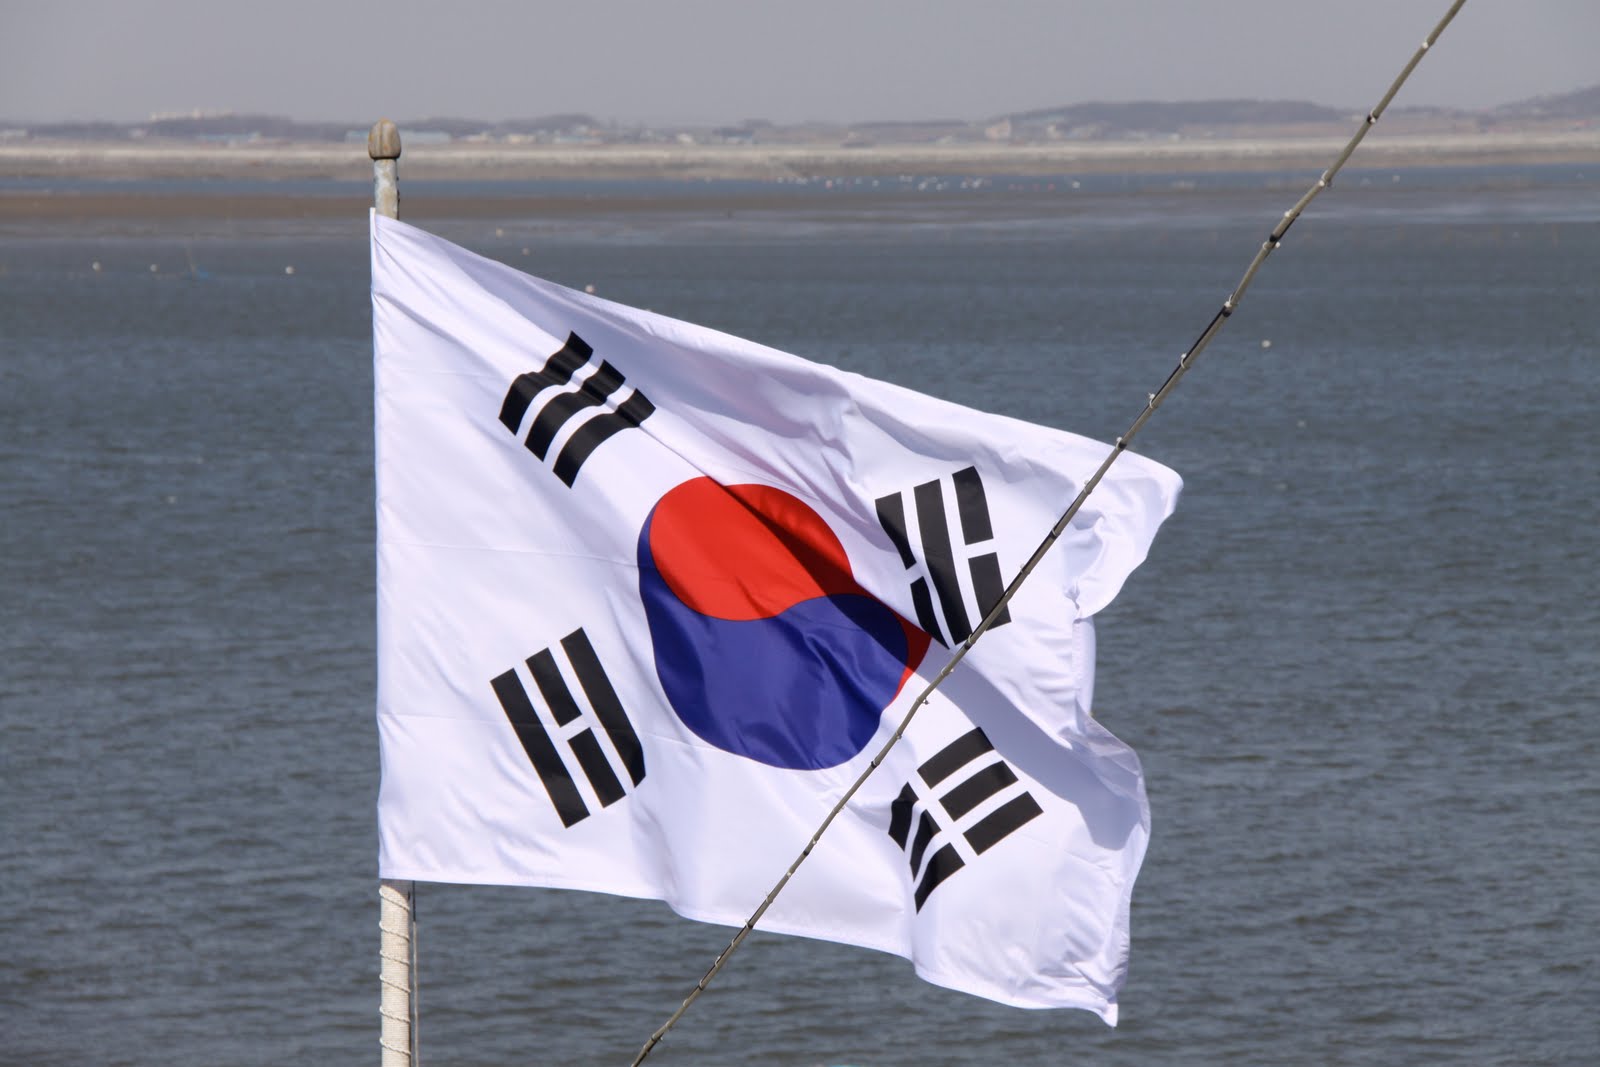 Өмнөд Солонгосын биеэ үнэлэгчид эсэргүүцлээ илэрхийлэн жагсчээ 